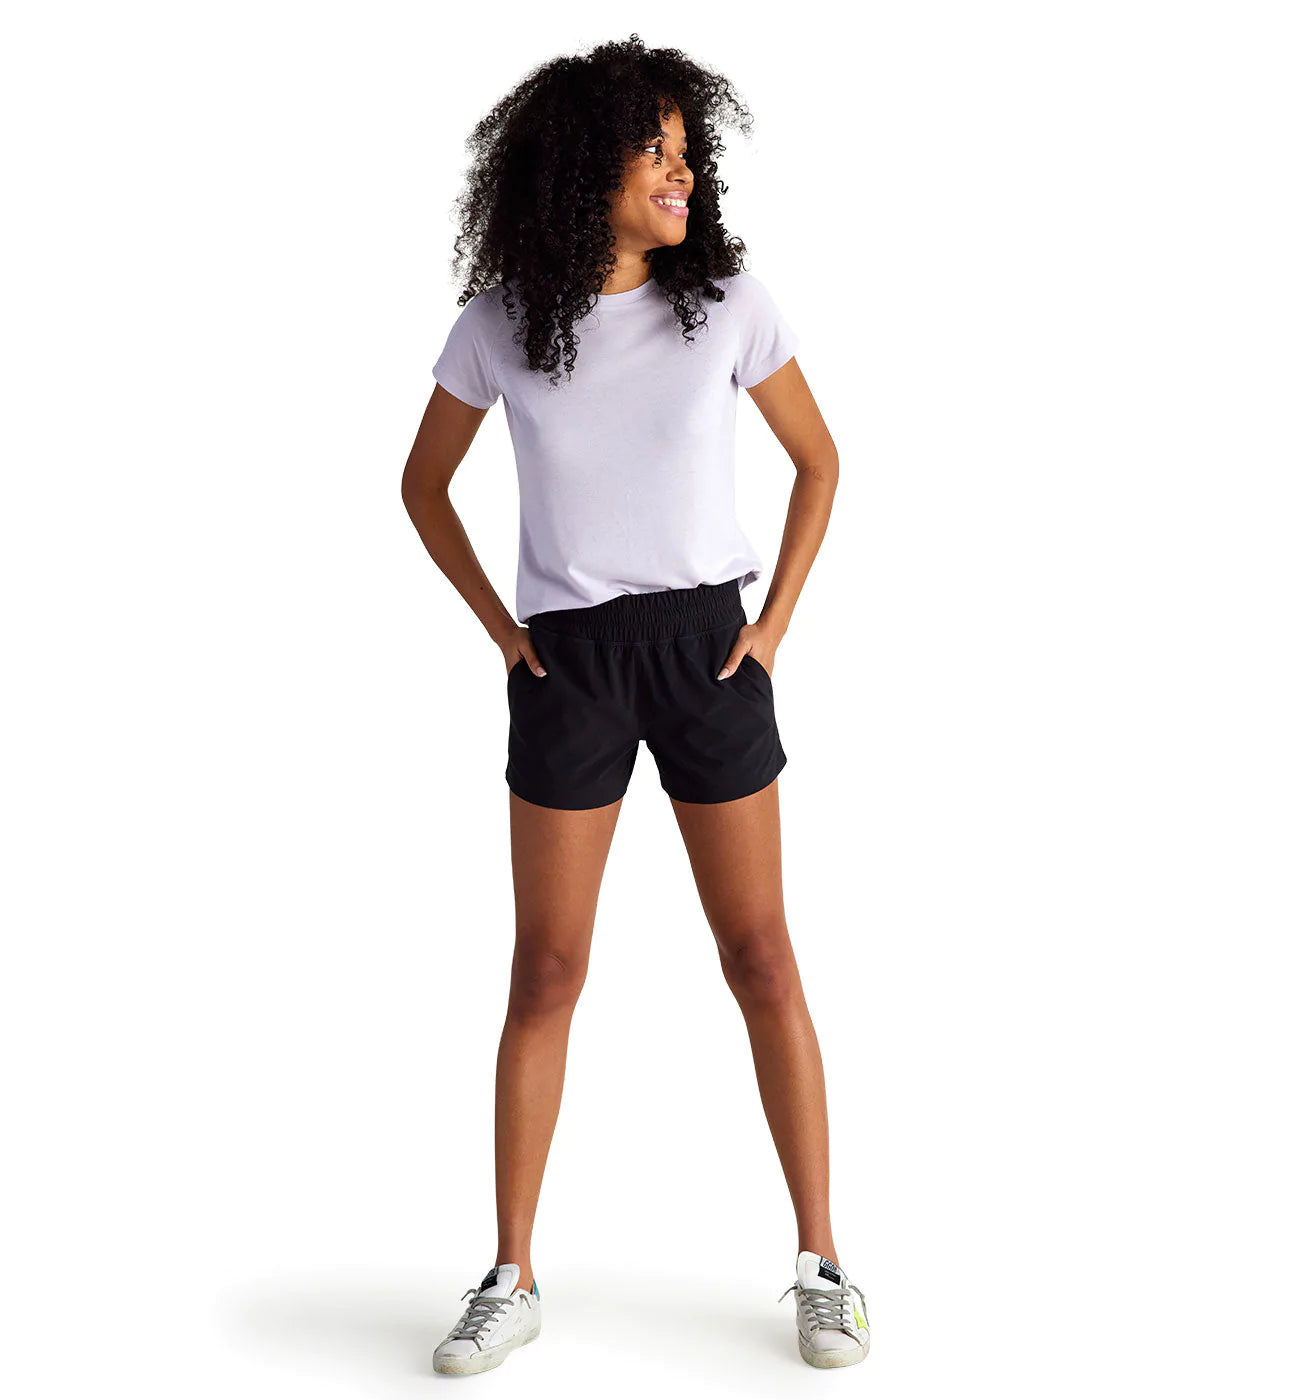 Women's Bermuda Shorts, Shorts for Women